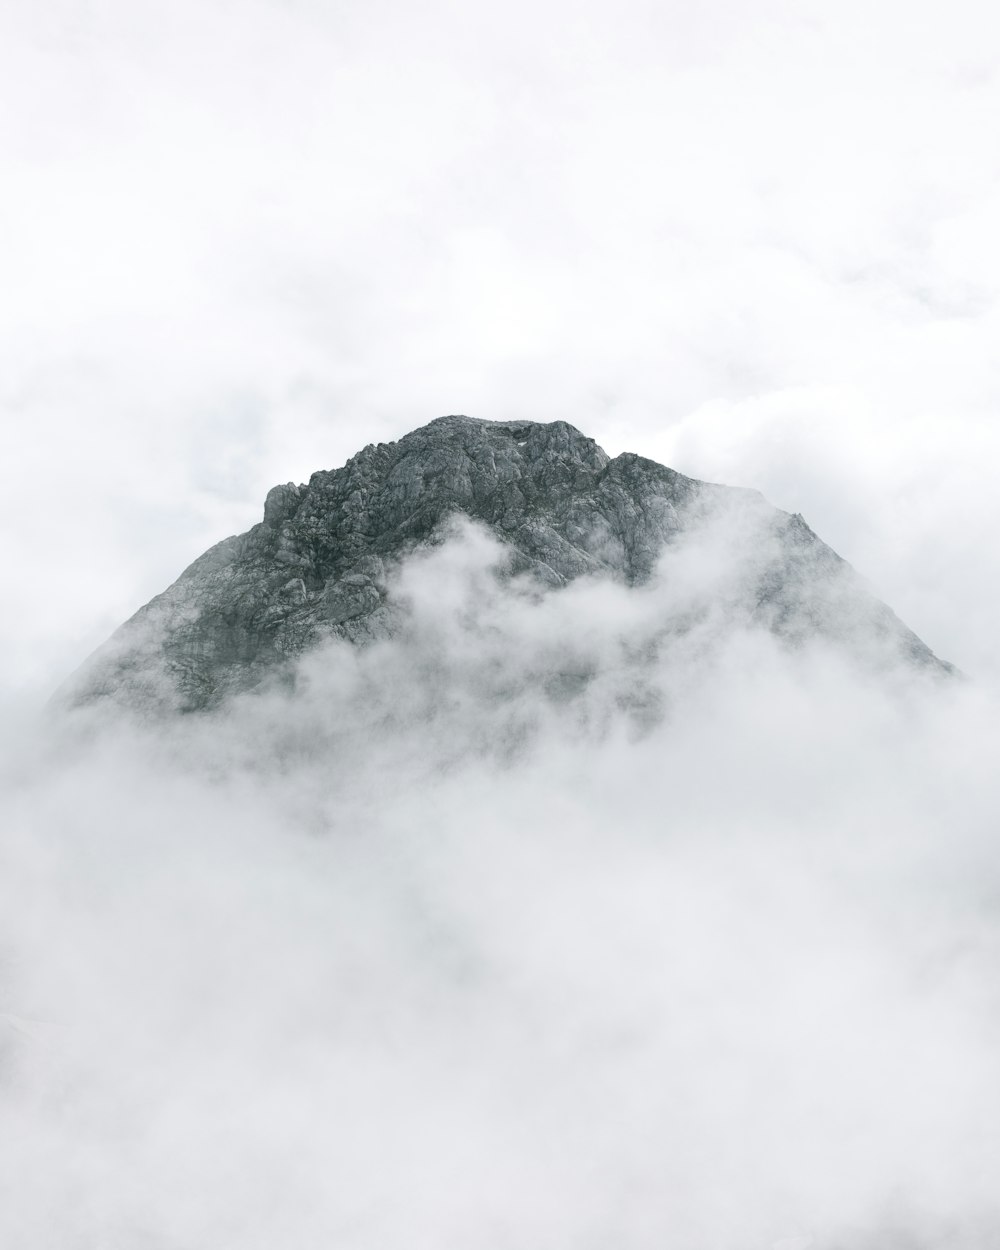 montaña blanca y negra bajo nubes blancas